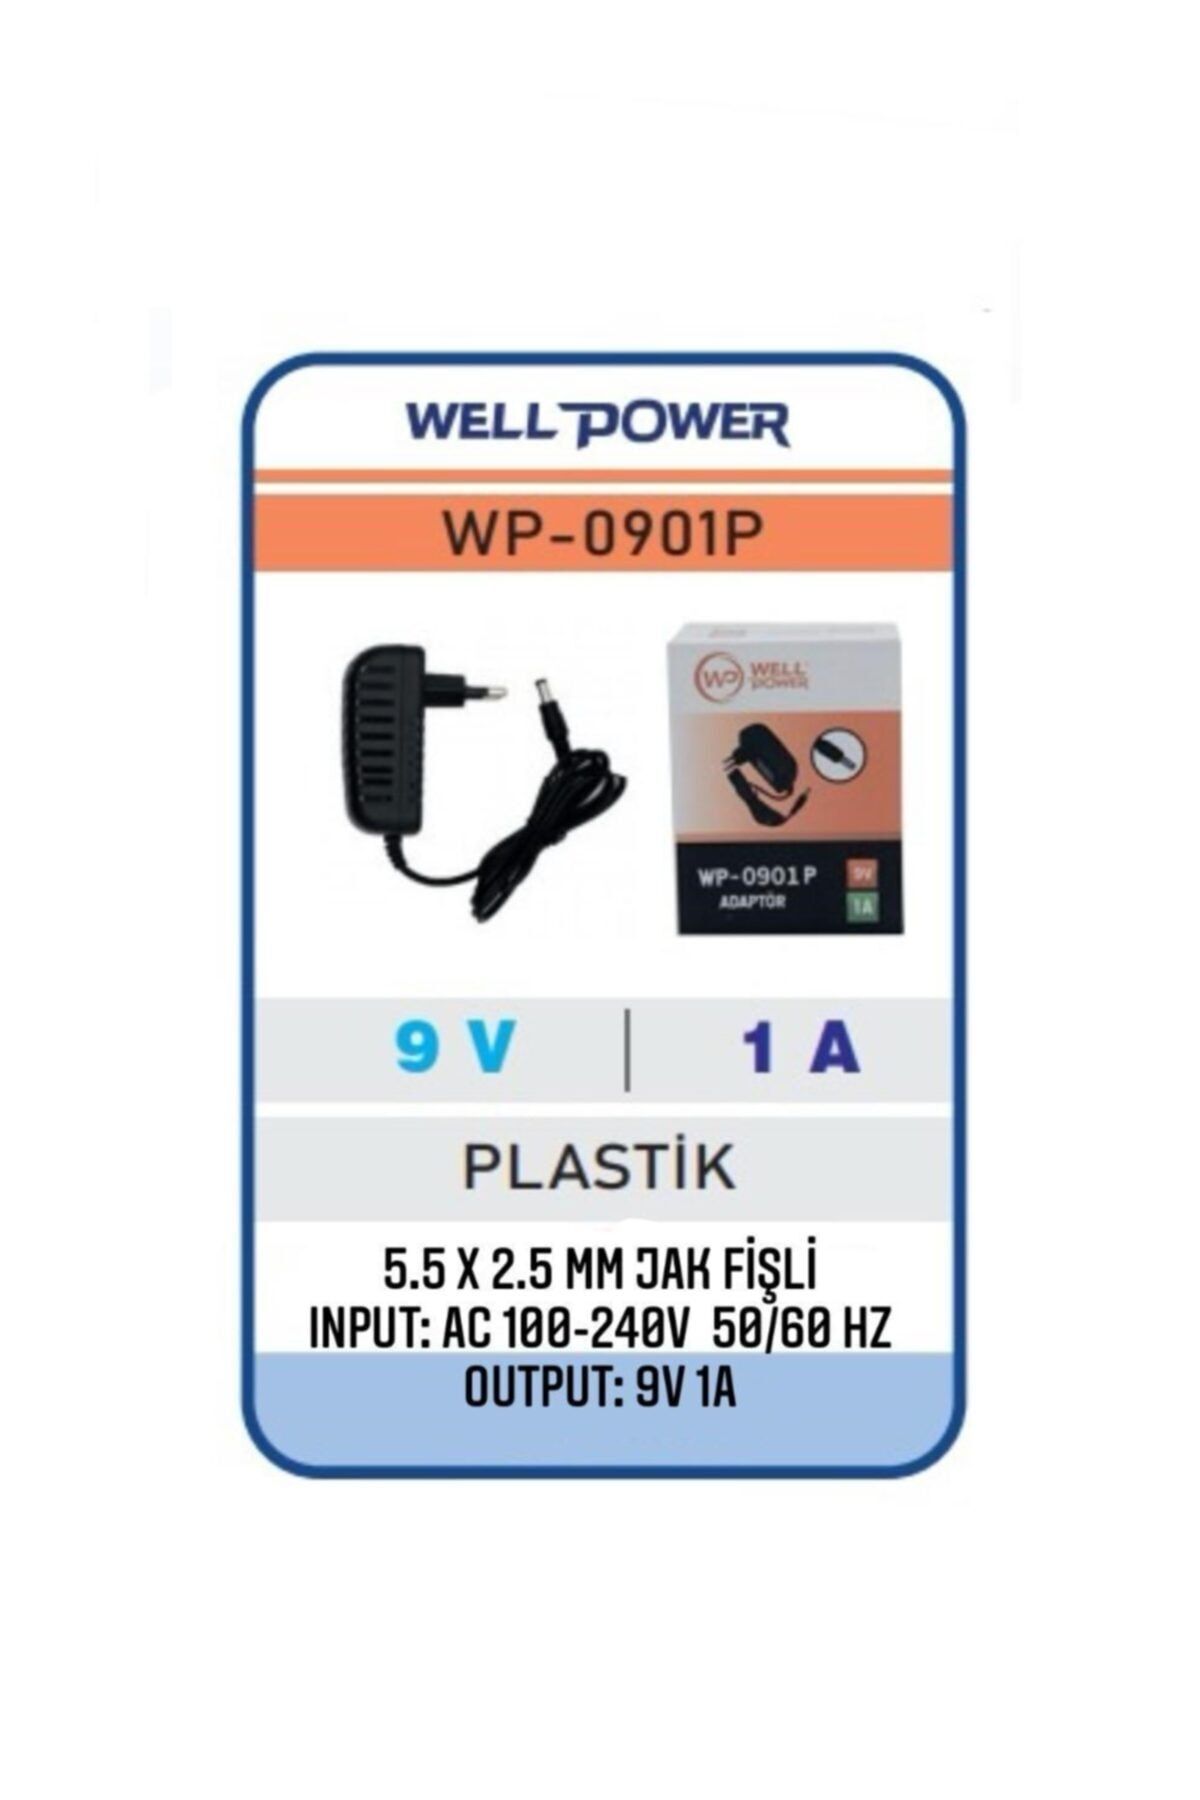 WELL POWER 9v 1a Adaptör 9 Volt 1 Amper 5.5 X 2.5 Mm Jak Fişli Plastik Kasa Wellpower Wp-0901p